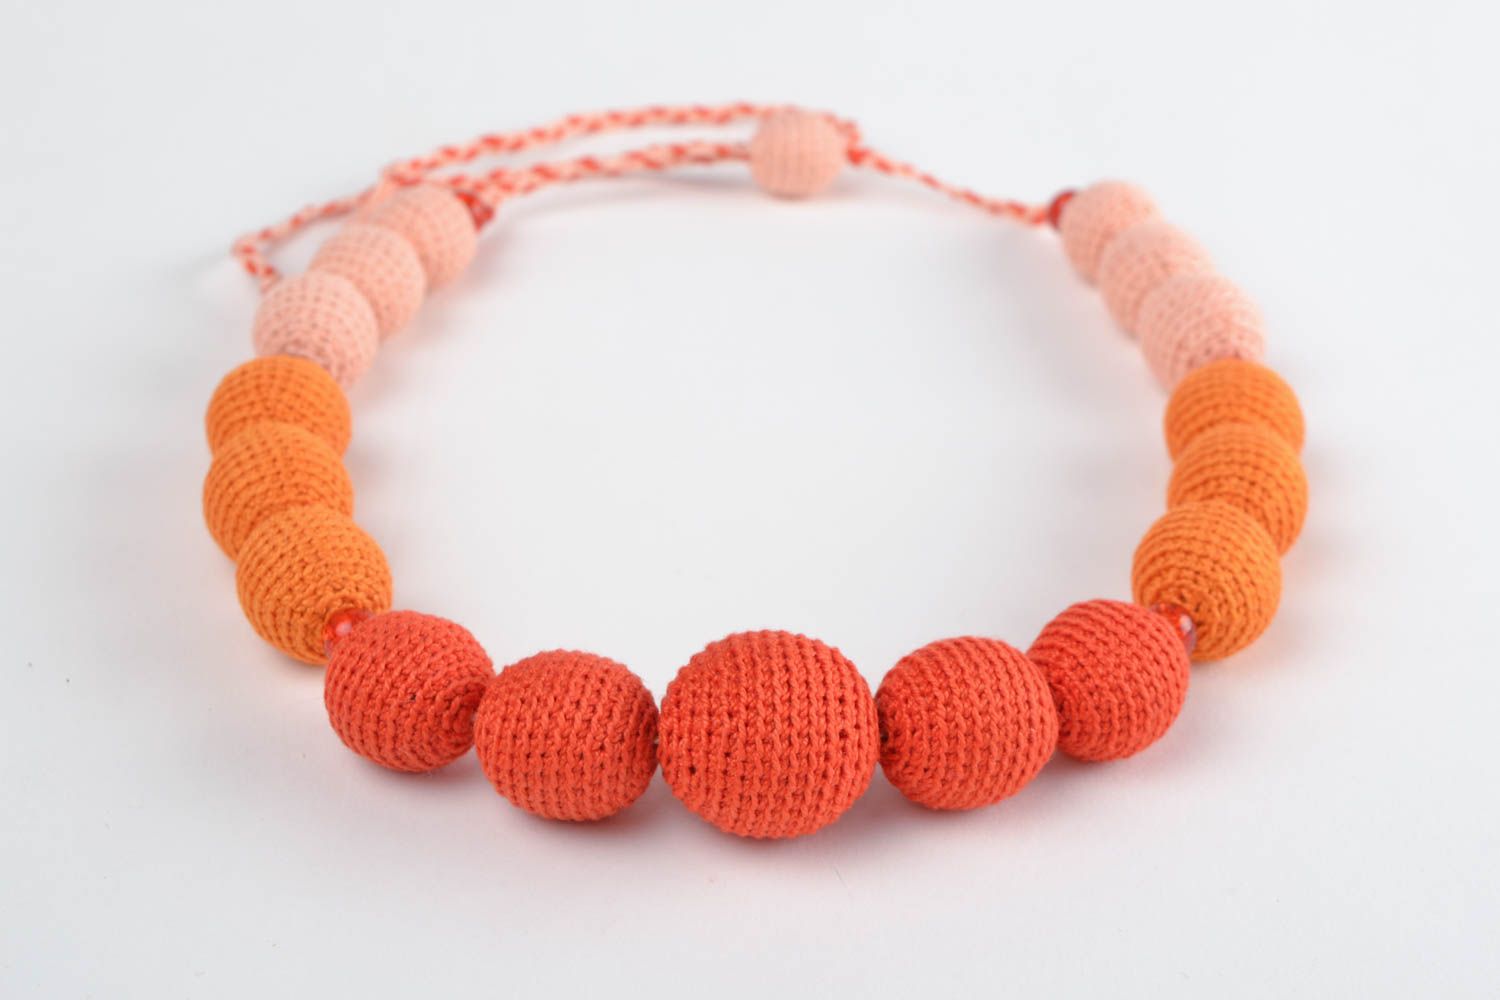 Textil Collier aus Holzperlen in Orange Rosa Rot stilvoll handgemacht schön foto 3